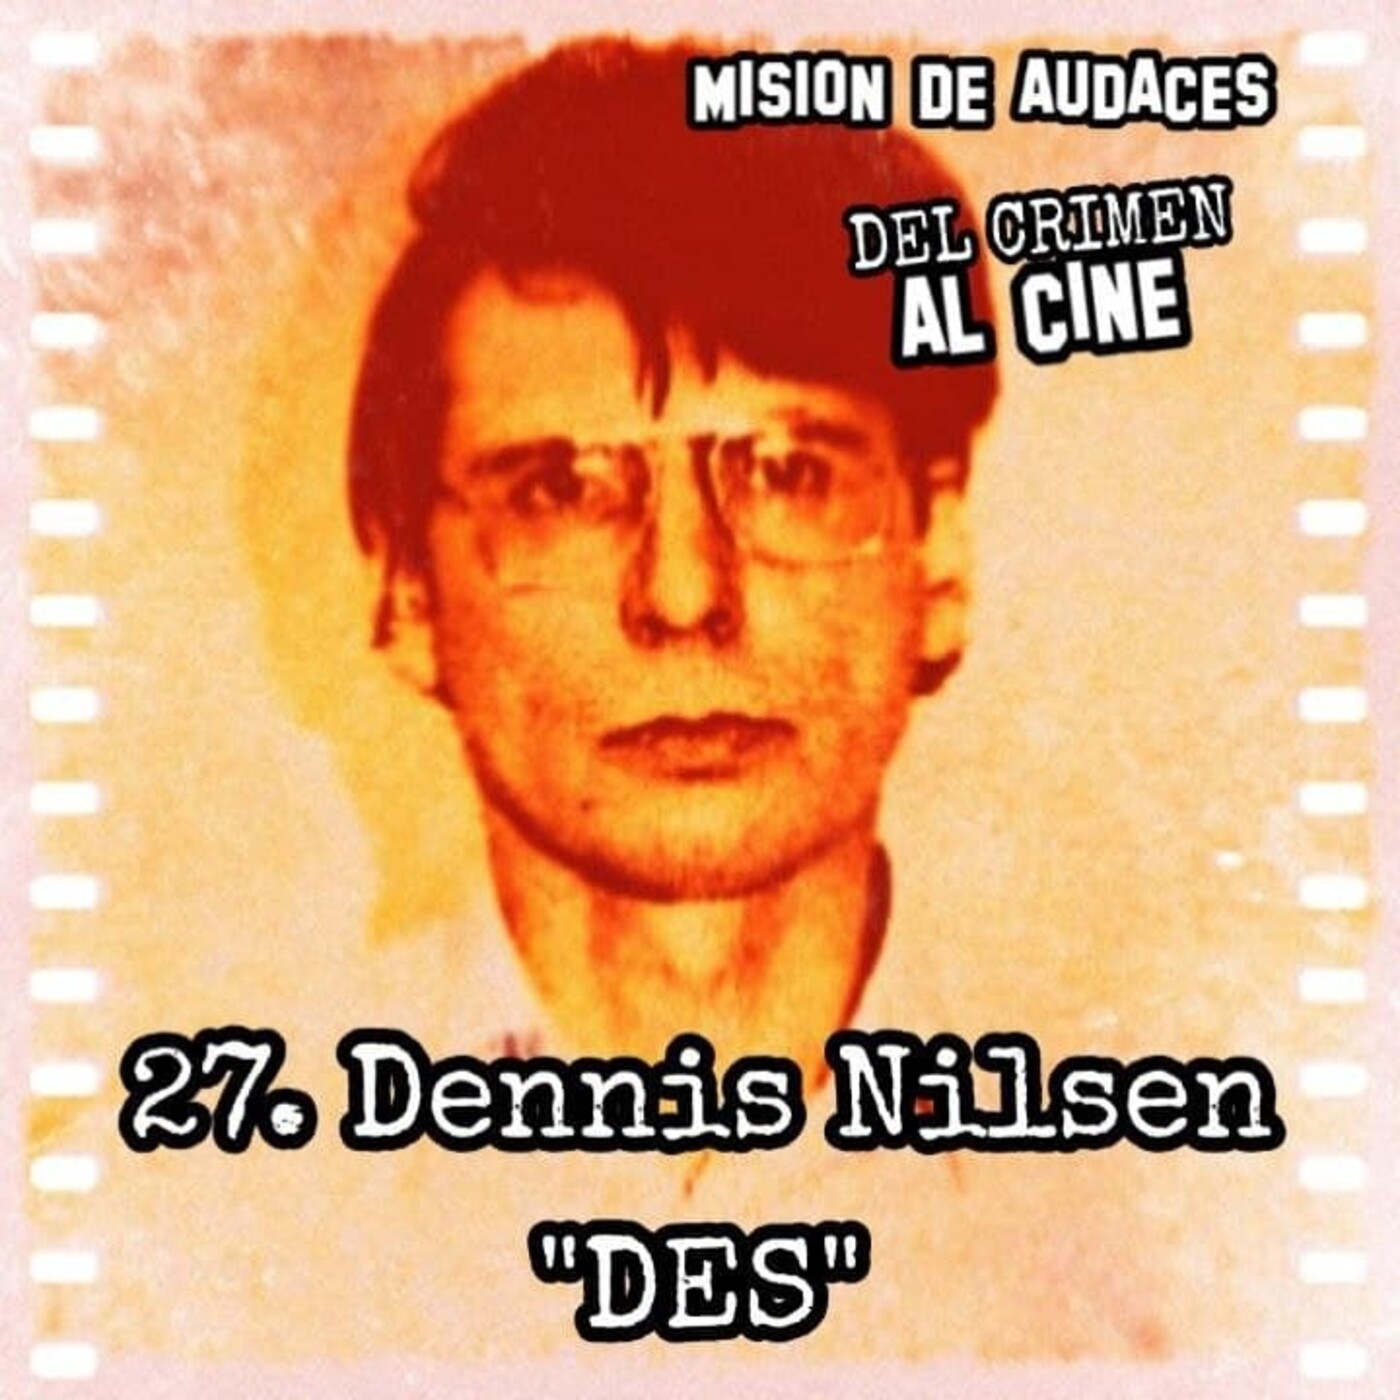 27. MDA - Del Crimen al Cine - Dennis Nilsen _DES_